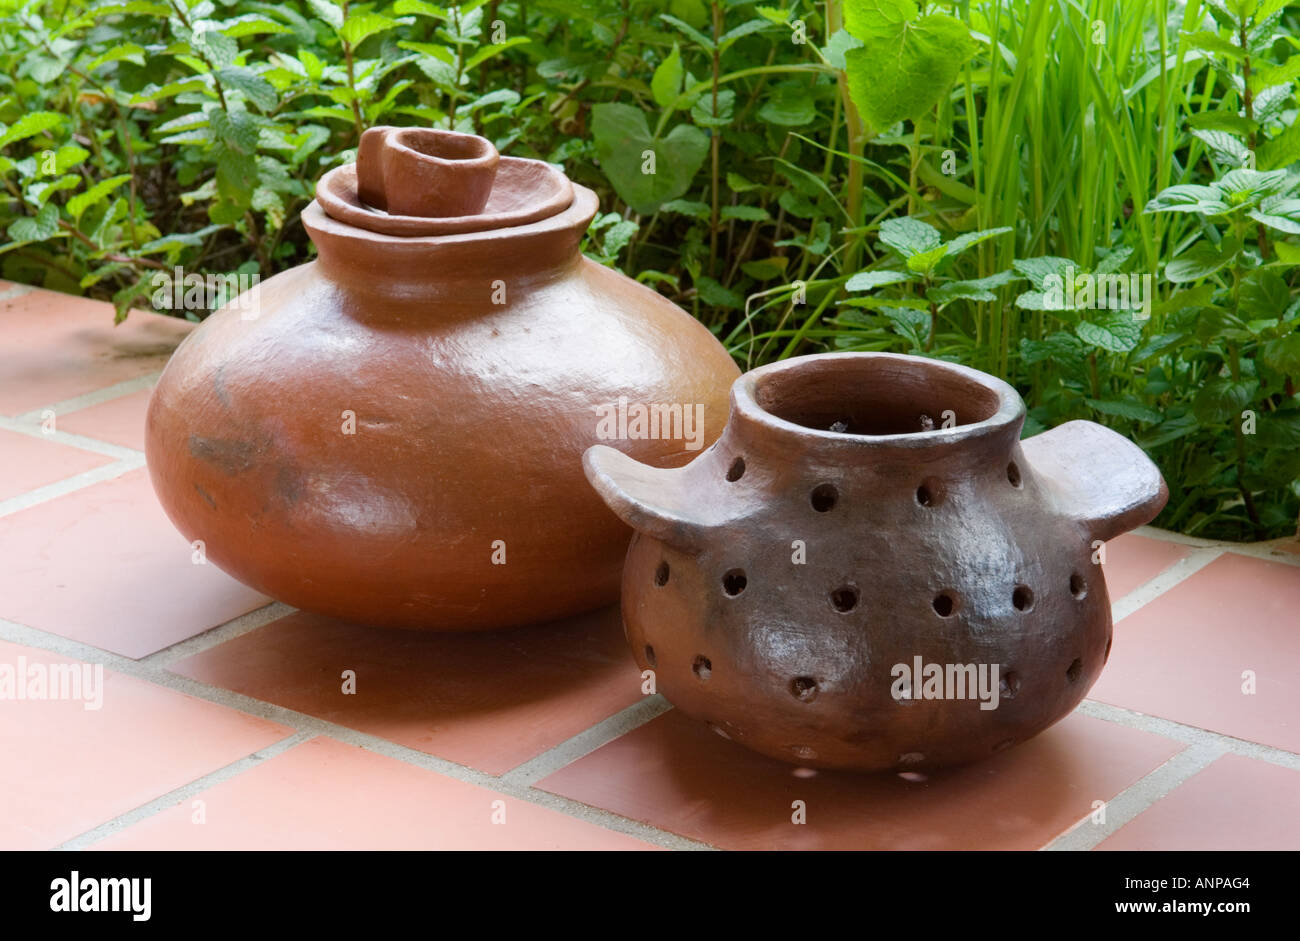 La cerámica lanzados a mano. Productos típicos de la isla de La Gomera, Islas Canarias Foto de stock